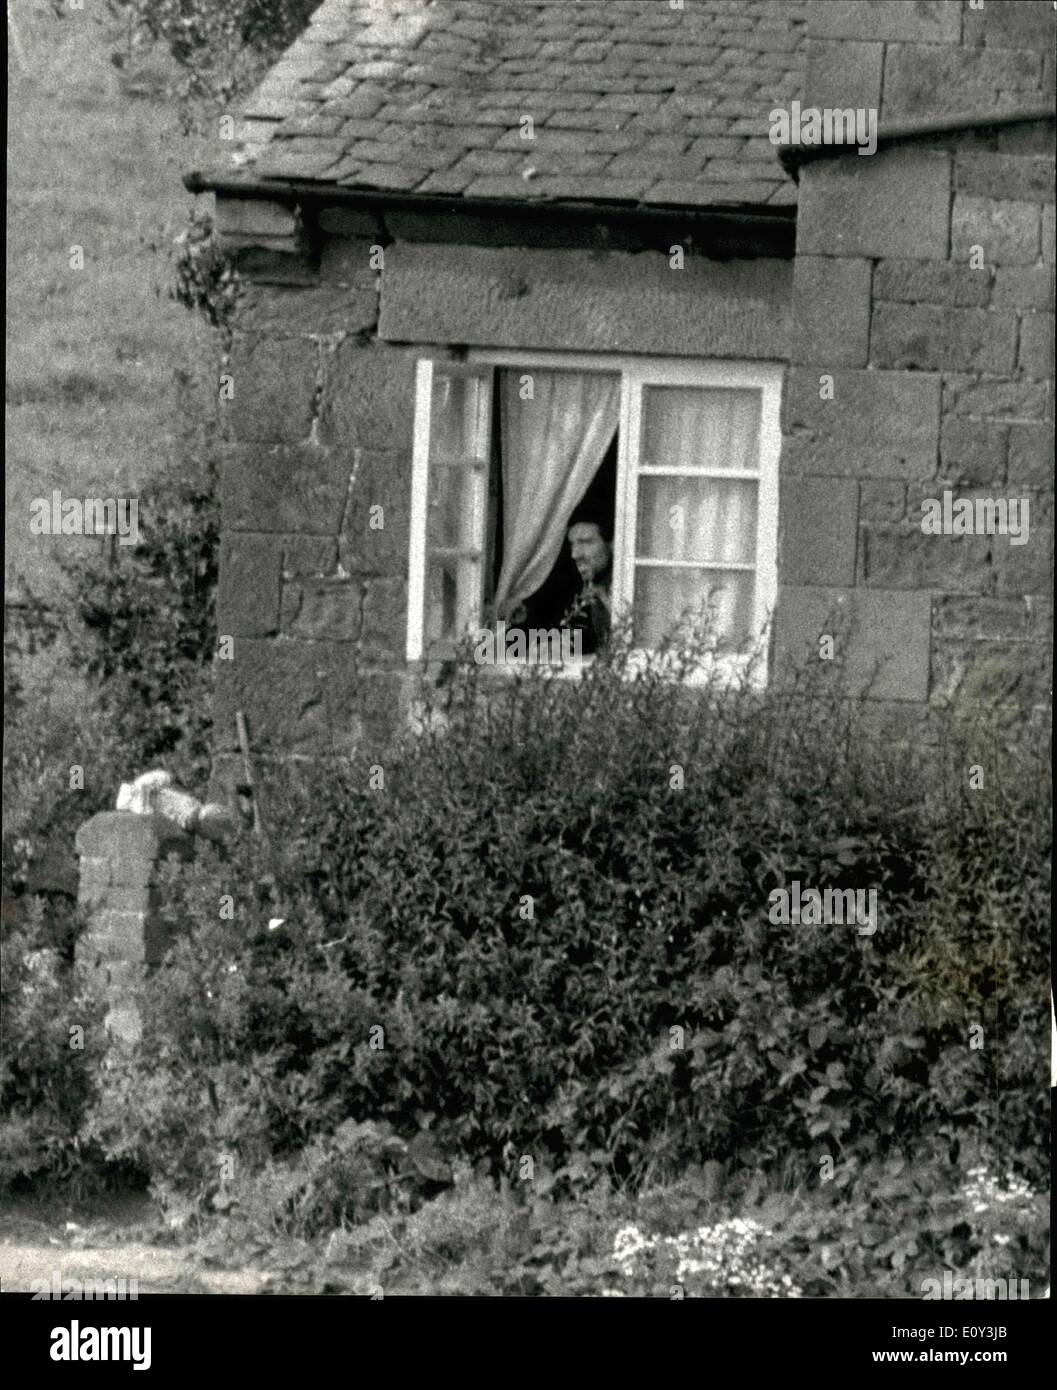 24. Sep 1968 - Gunman taucht aus belagerten Häuschen auf, um Nahrung zu sammeln.: John James, der Shropshire-Schütze, der in seinem Häuschen in Weston-under-Red Castle belagert wurde, tauchte gestern zum ersten Mal Tanne auf, um Lebensmittel zu sammeln. Er trug seine Flinten unter seinen Armen. James ging sechs Schritte zu einer Außenmauer und sammelte Brot, eine Dose mit Mittagessen, Butter und Wasser, die Herr Hedlington, seinem Schwager, hinterlassen hatte. Er drehte sich um und ging hinein. Es ist nun sechs Tage her, dass James sich mit seiner Frau Joyce und vier kleinen Kindern in der Hütte verbarrikadierte Stockfoto